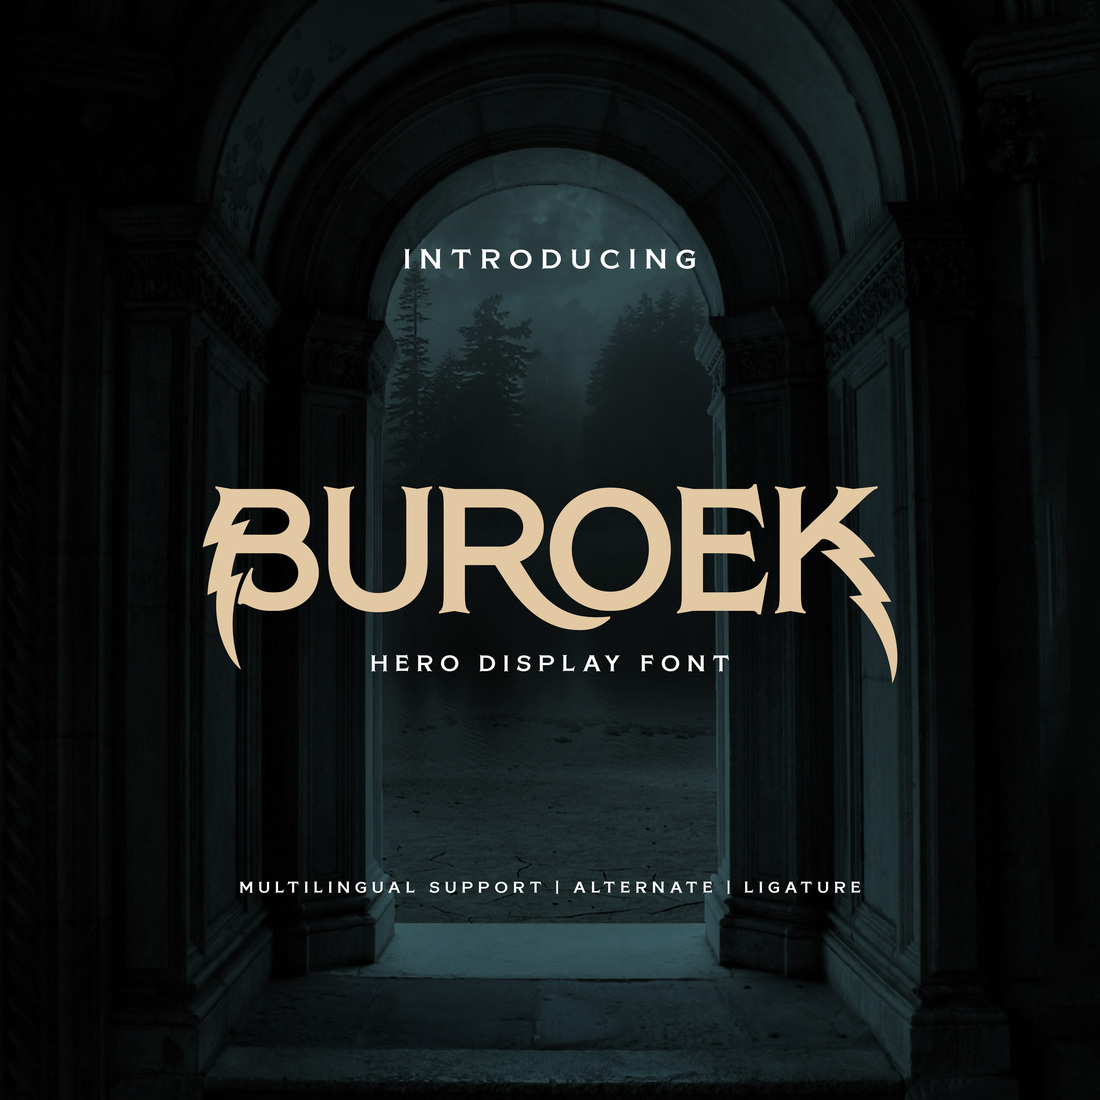 Buroek | Display Hero Font cover image.